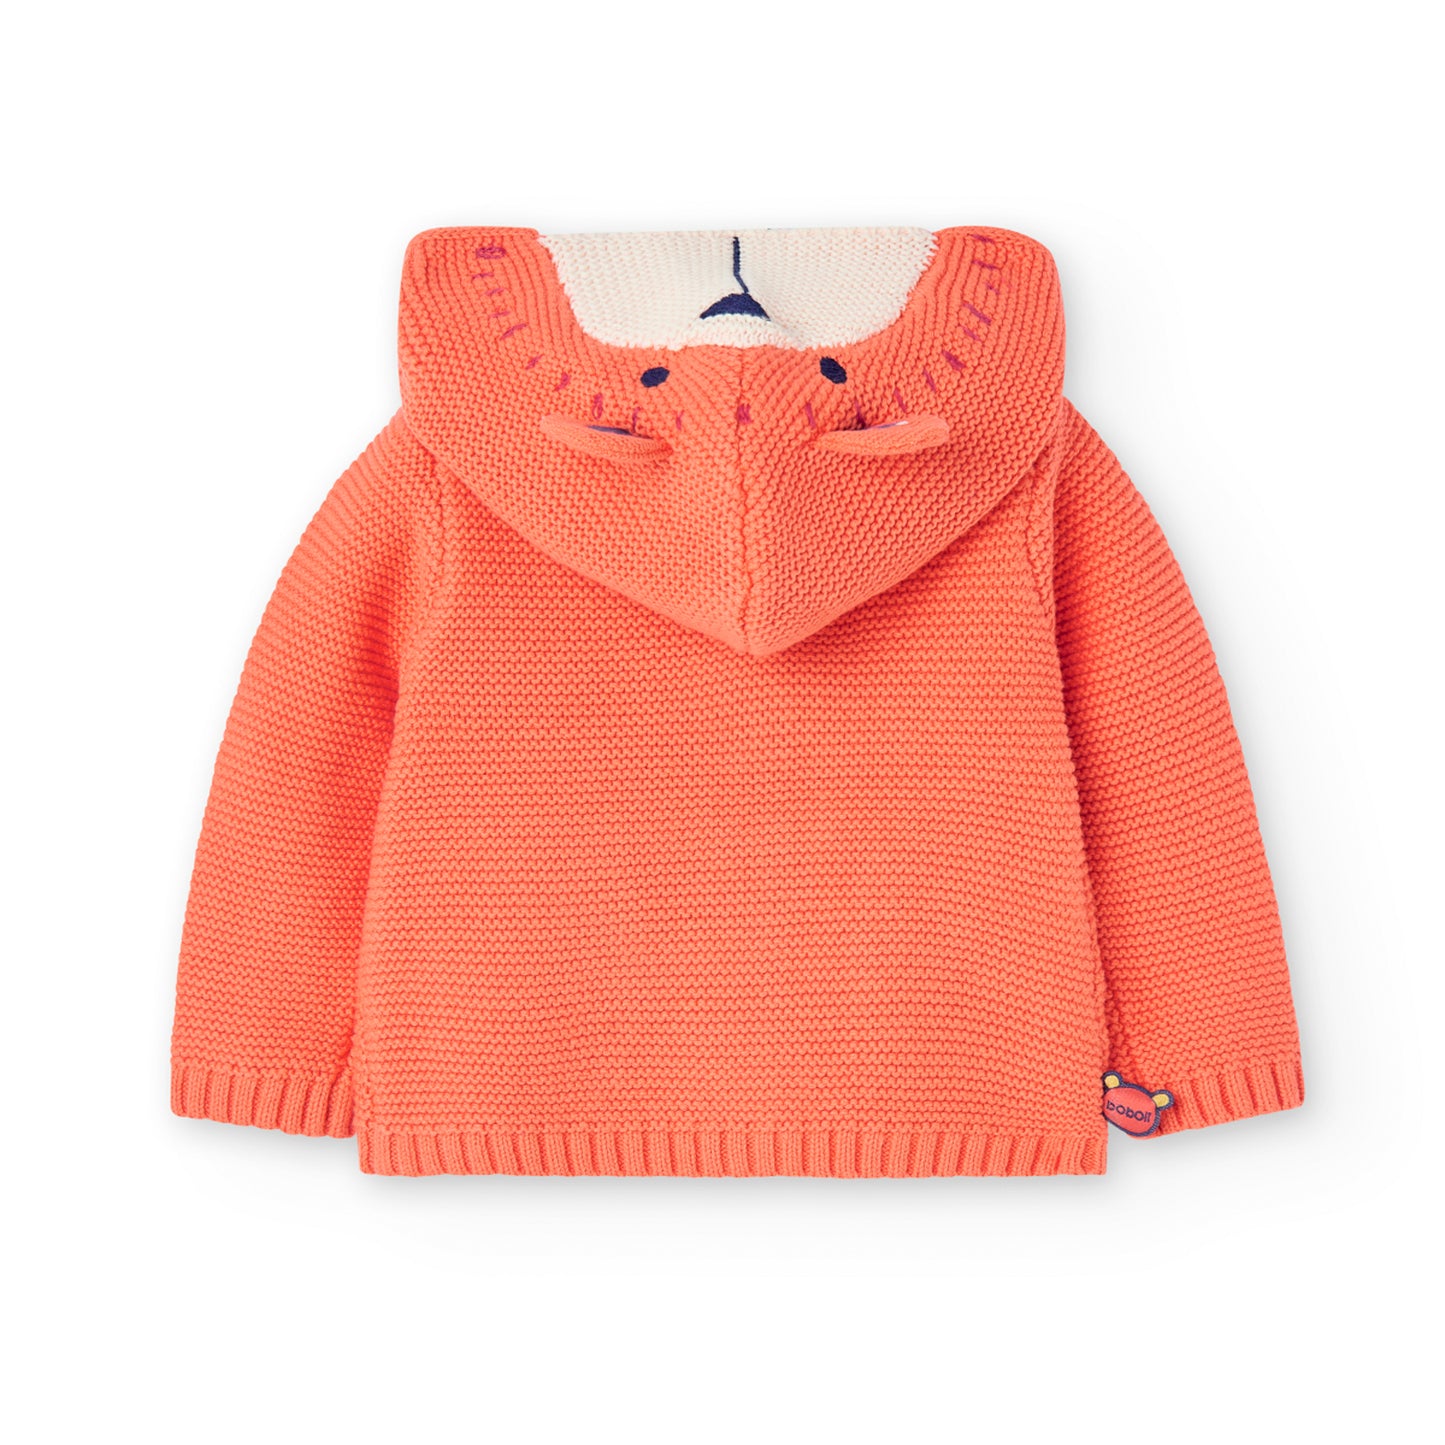 Sweater con Capucha Boboli Oso Naranja